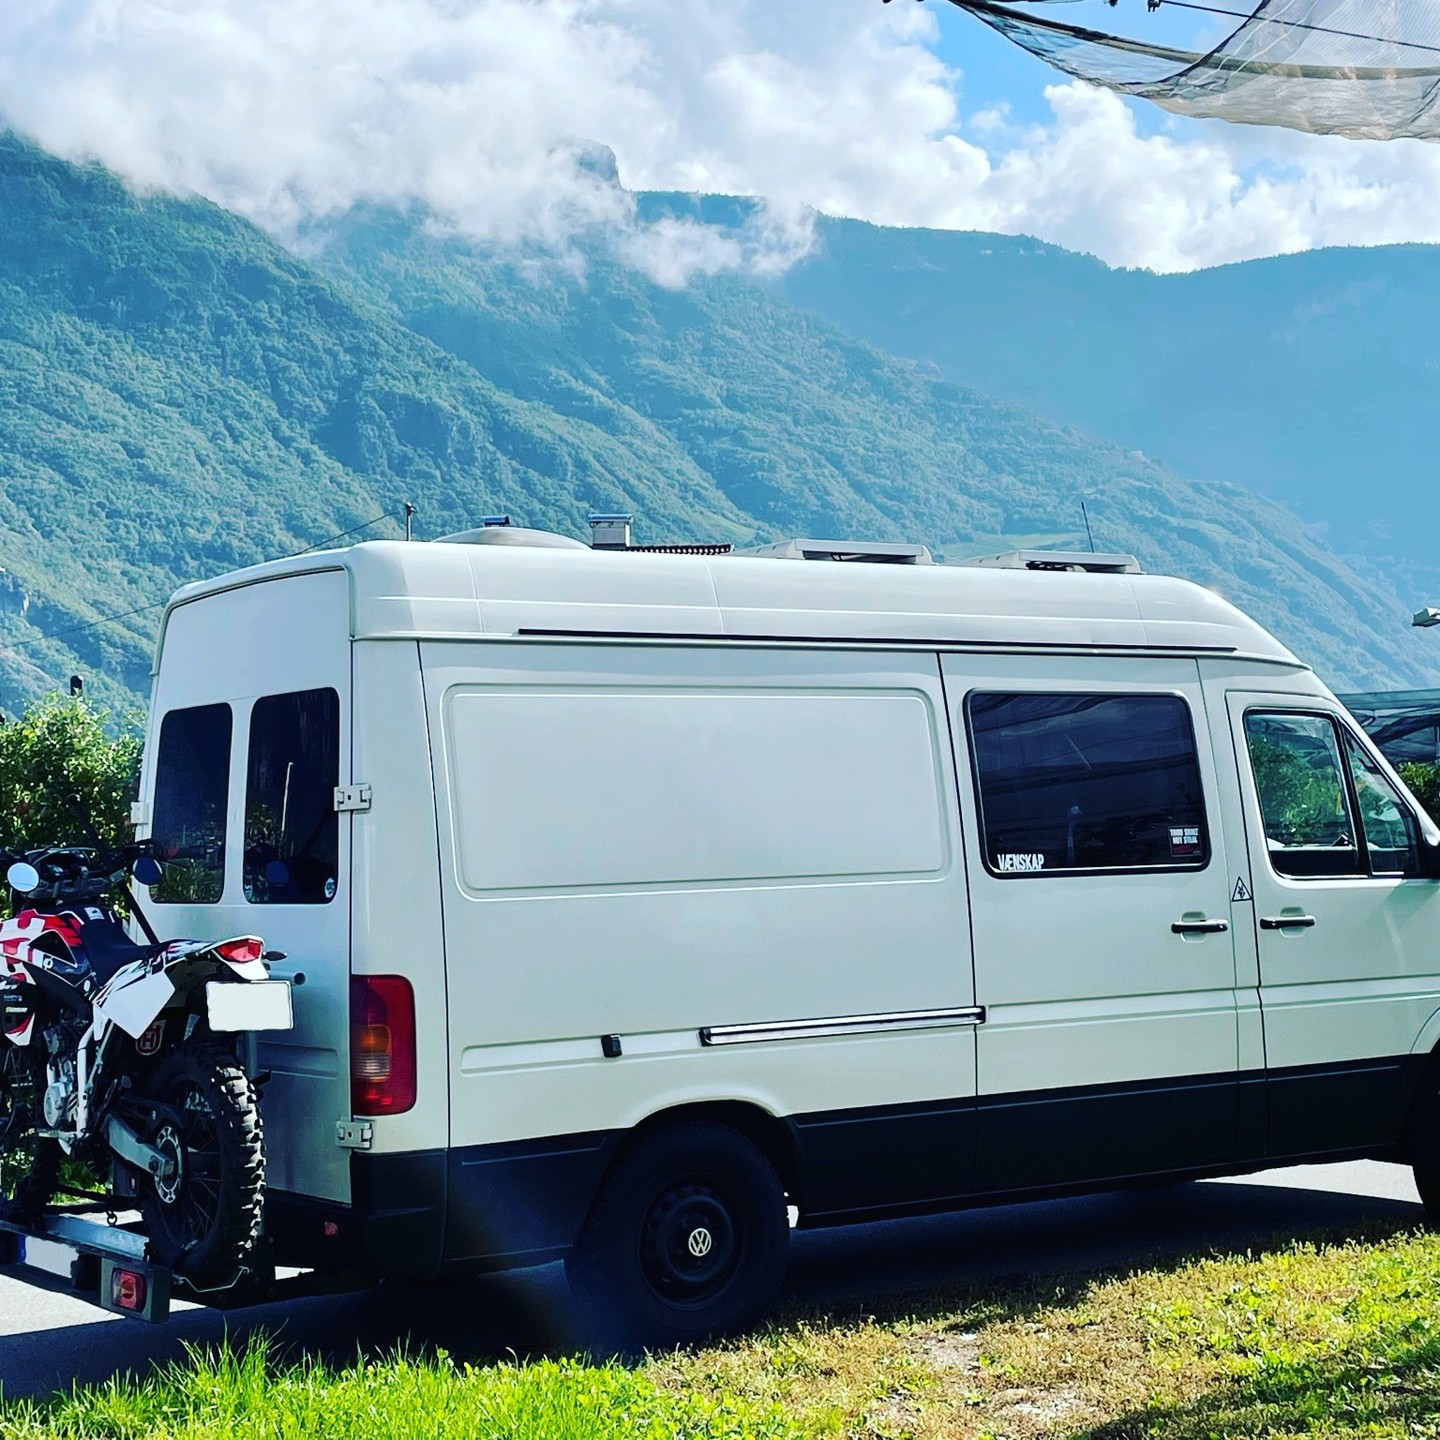 Das Motorrad durfte bei der letzten Reise nicht fehlen. Auch wenn Slowenien laut Google ein Land ist ,was für den Wild Camping Urlaub nicht geeignet sein soll, kann ich nur sagen, das Slowenien mit einer der schönsten Trips durch Europa🇪🇺 für mich war. Wir hatten keine Probleme mit dem Wildstehen. Slowenien ist Natur & Ruhe pur 🙃

Slowenien ich komme wieder 😍
🚐⛰🏕
 #vanlifevirals #vanlife #vanlifestyle 
#bus #vwbus #camper #husqvarna #motocross 
#campervan #vwbus #fehmarn 
#camp #baltic #van #vanlifegermany
#homeiswhereyouparkit #summer
 #bulli #camping #vw #draußen #wohnmobil #abenteuer #nature #picoftheday #travel #travelphotography